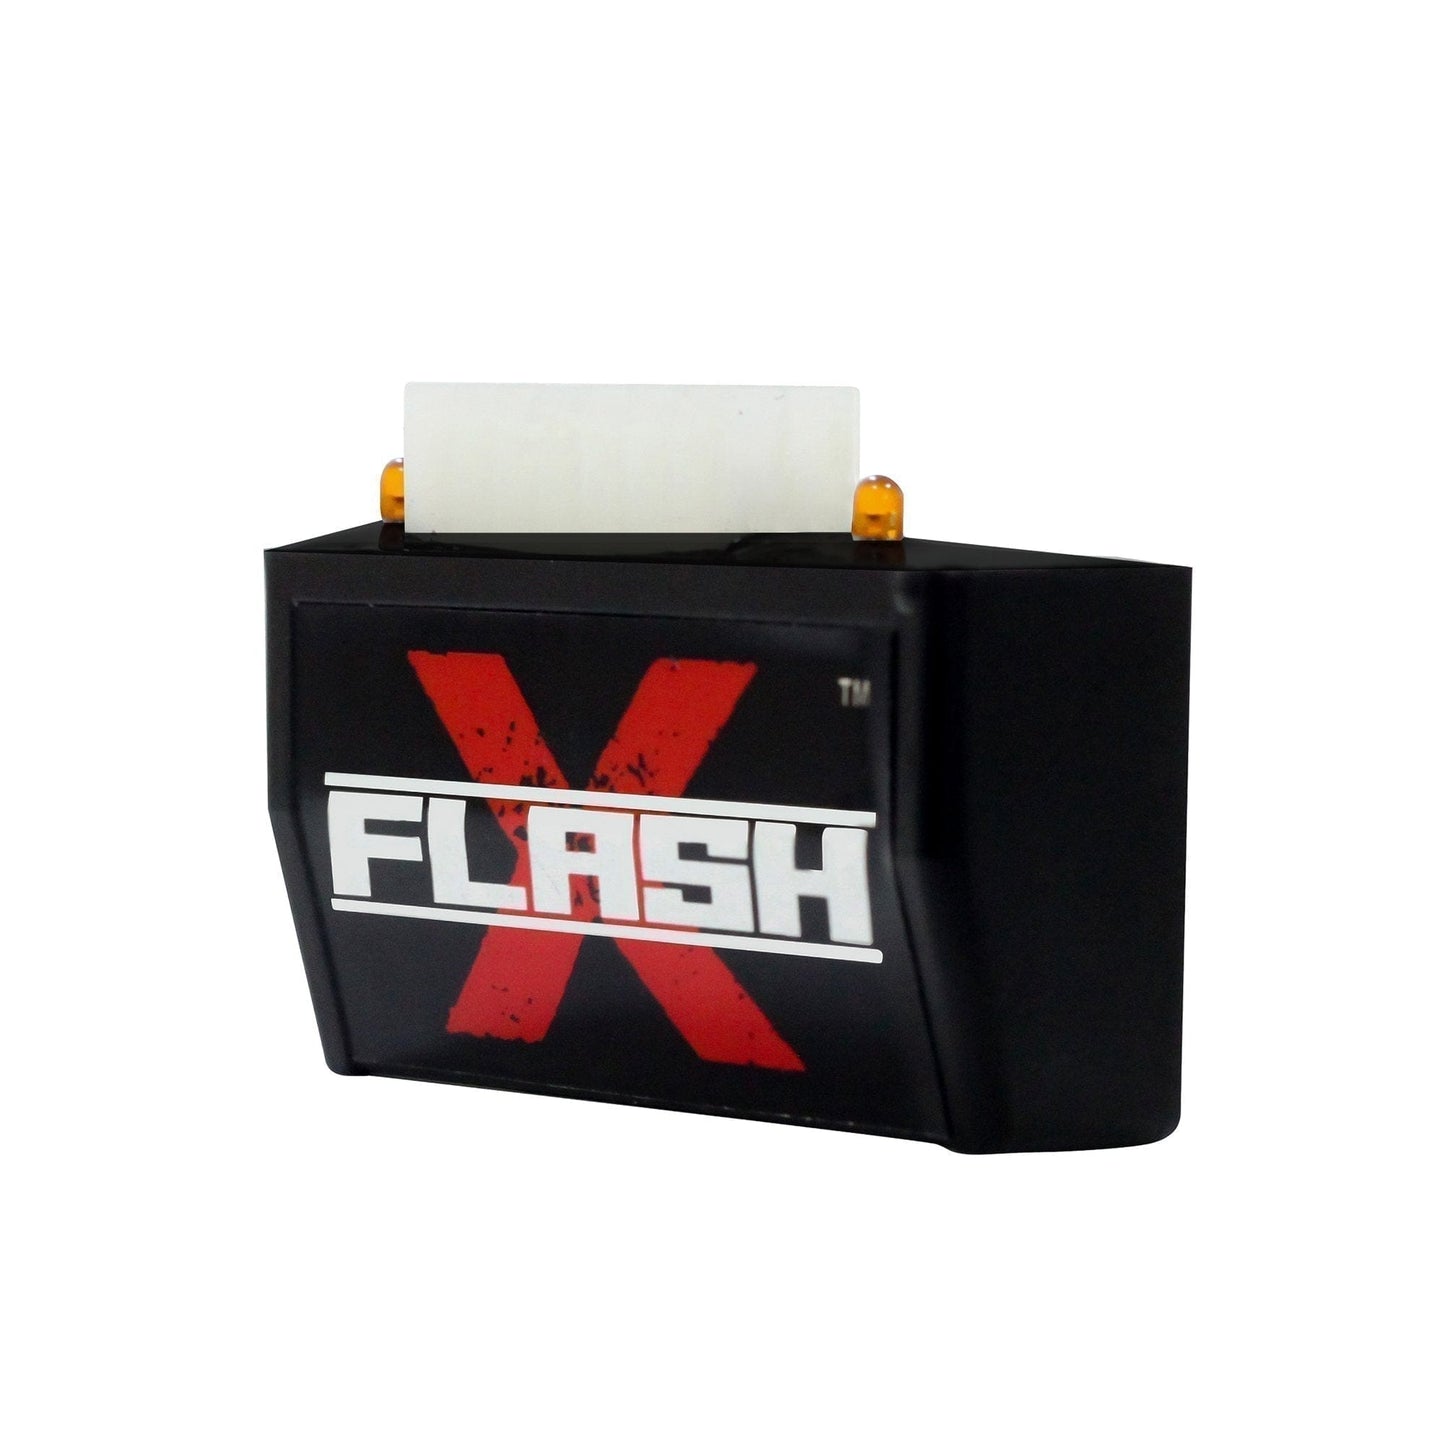 Destination Moto Husqvarna svartpilen Flash X Hazard Lights Flash Module, Blinker,Flasher